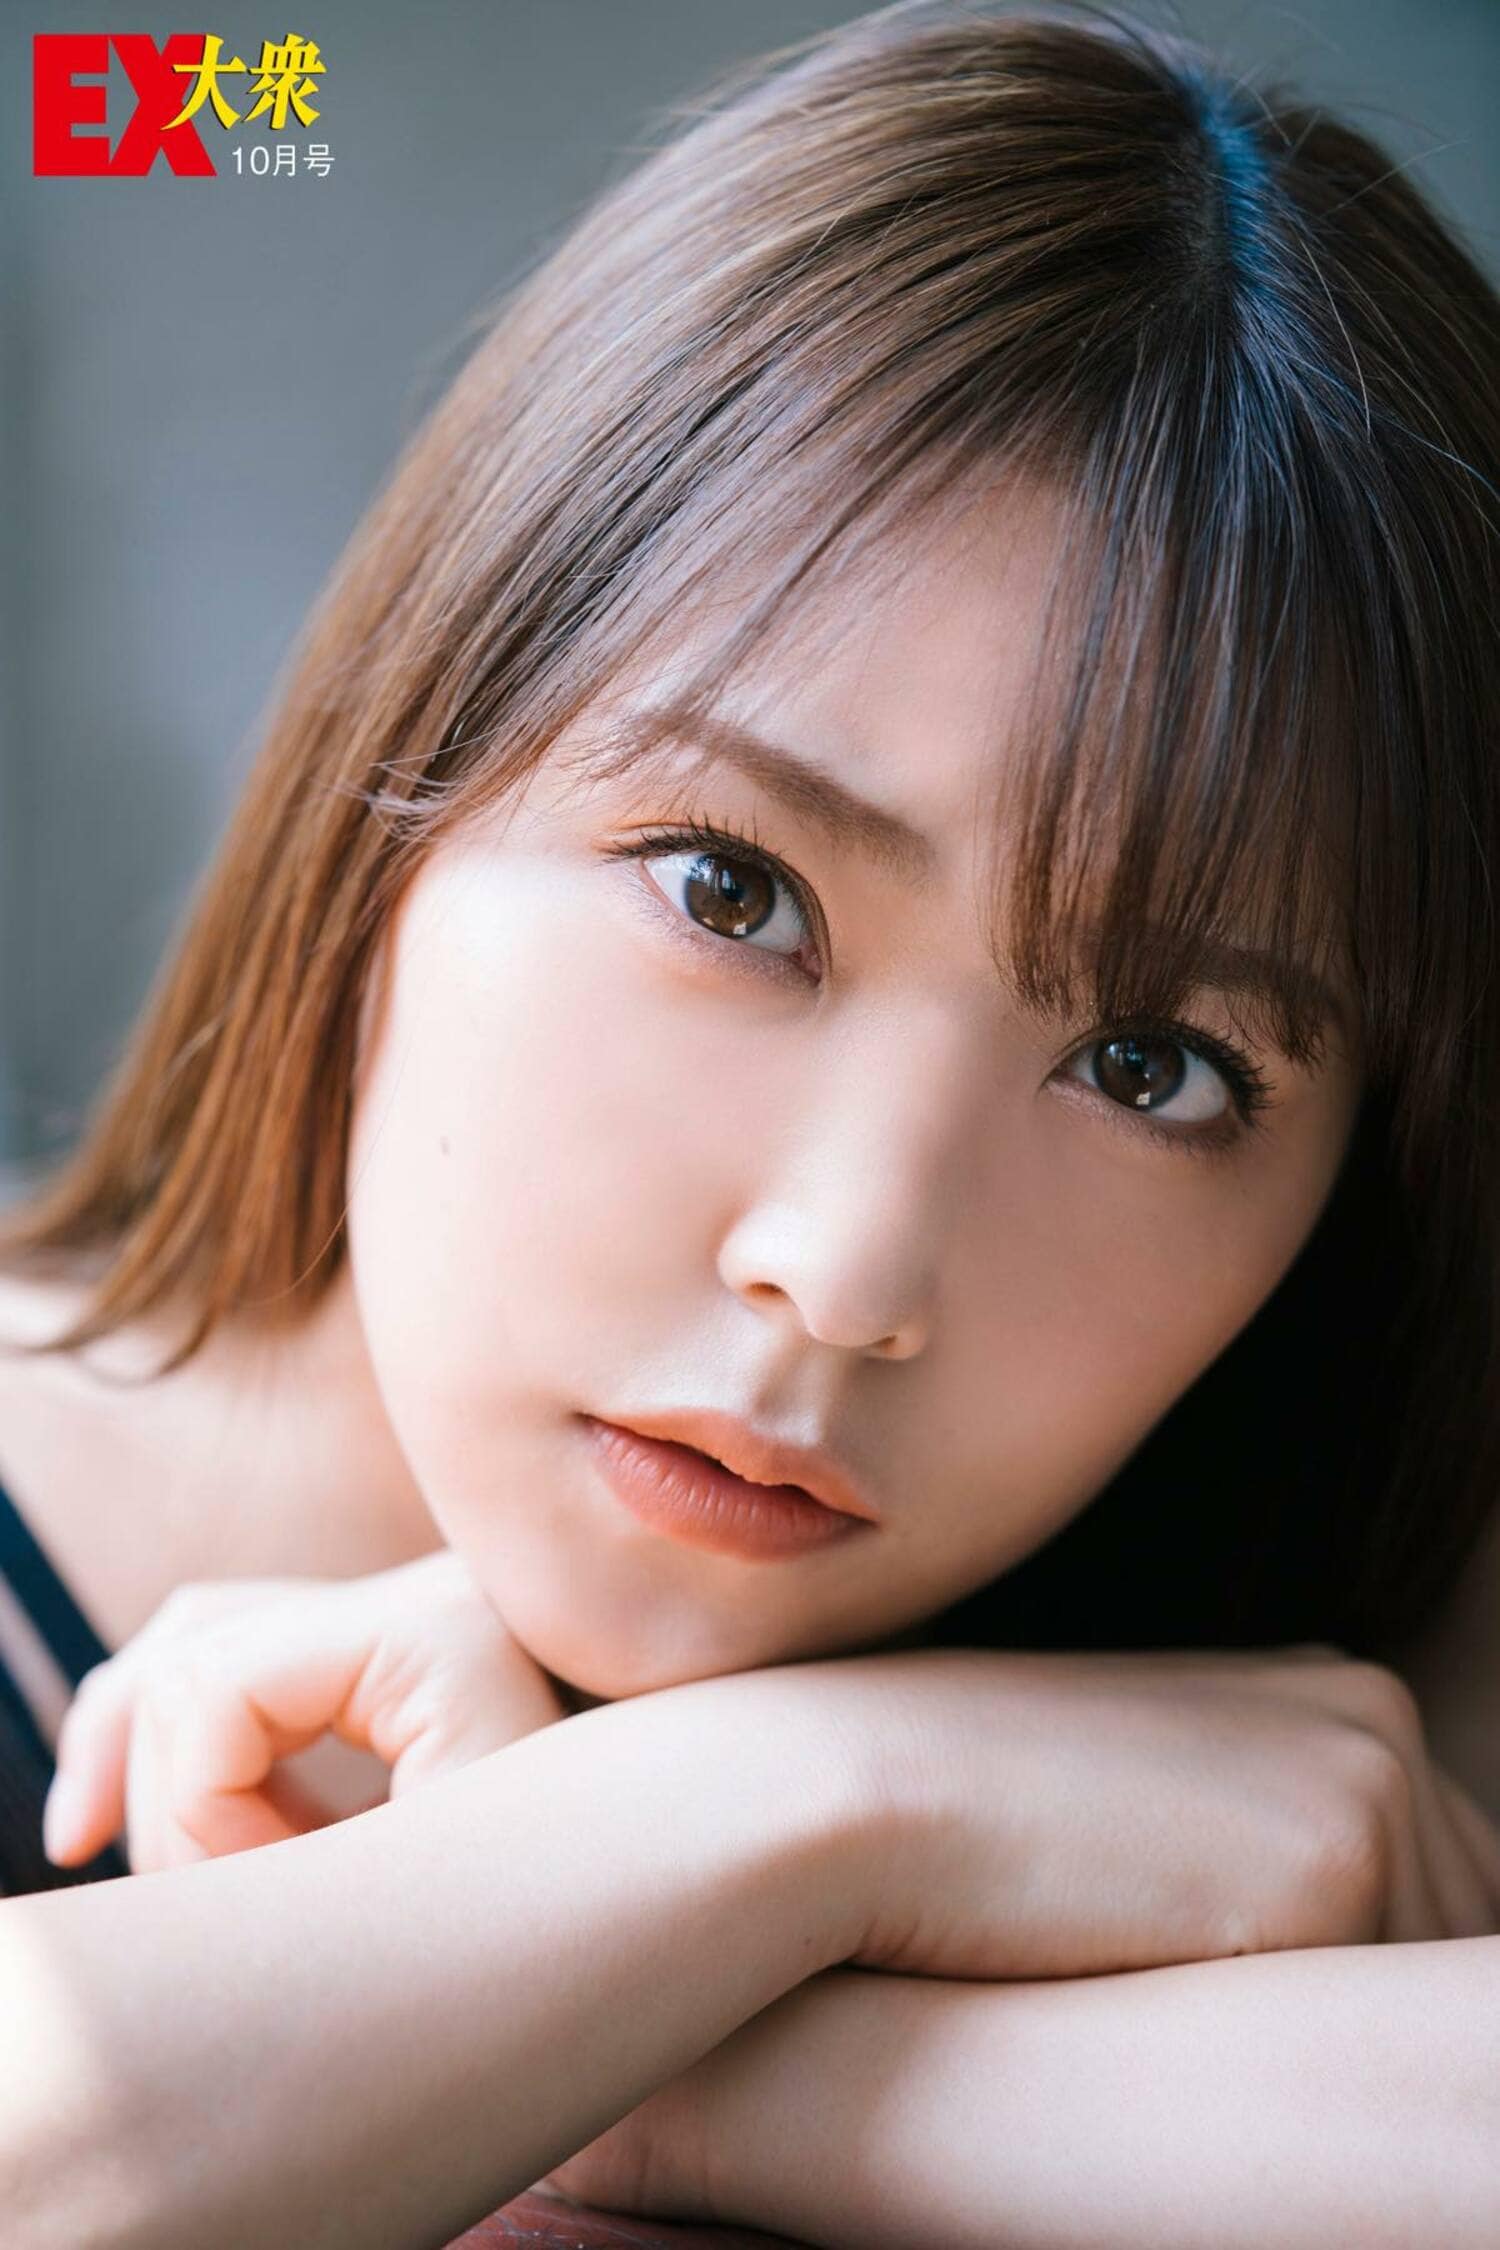 白間美瑠はグラビアを武器に山本彩卒業後のNMB48を背負ってきた【アイドルセンター論】の画像